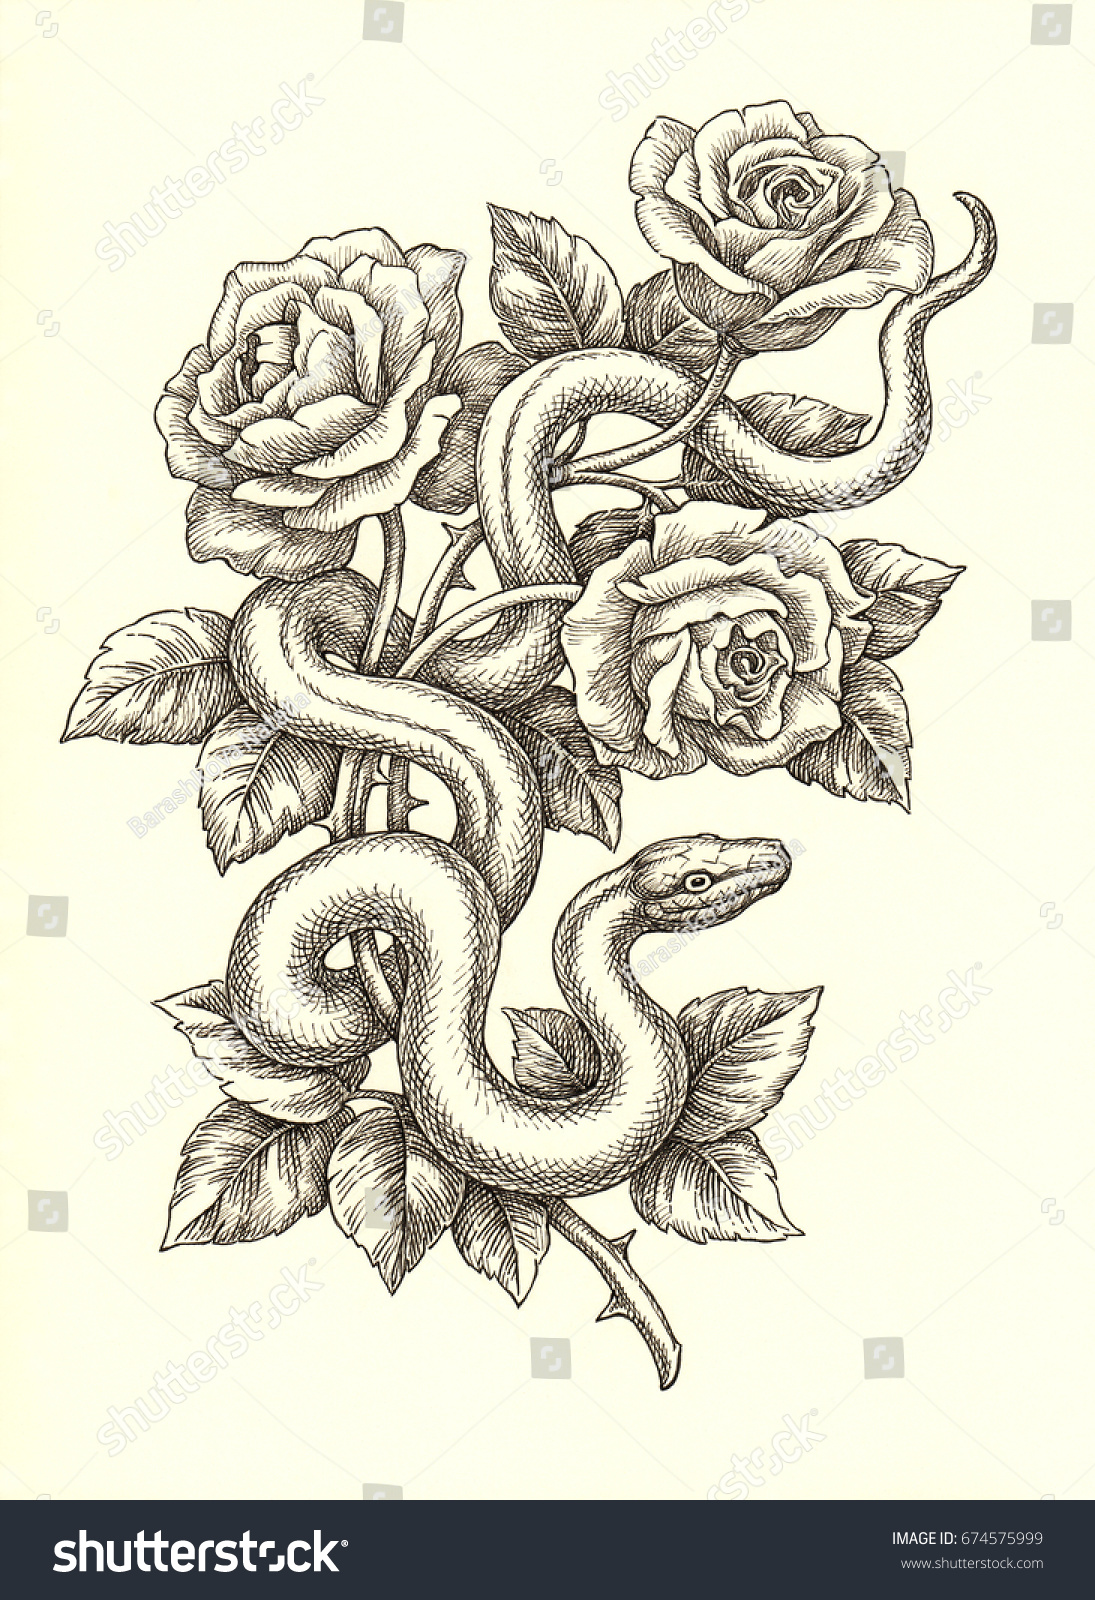 Эскиз змеи с розой